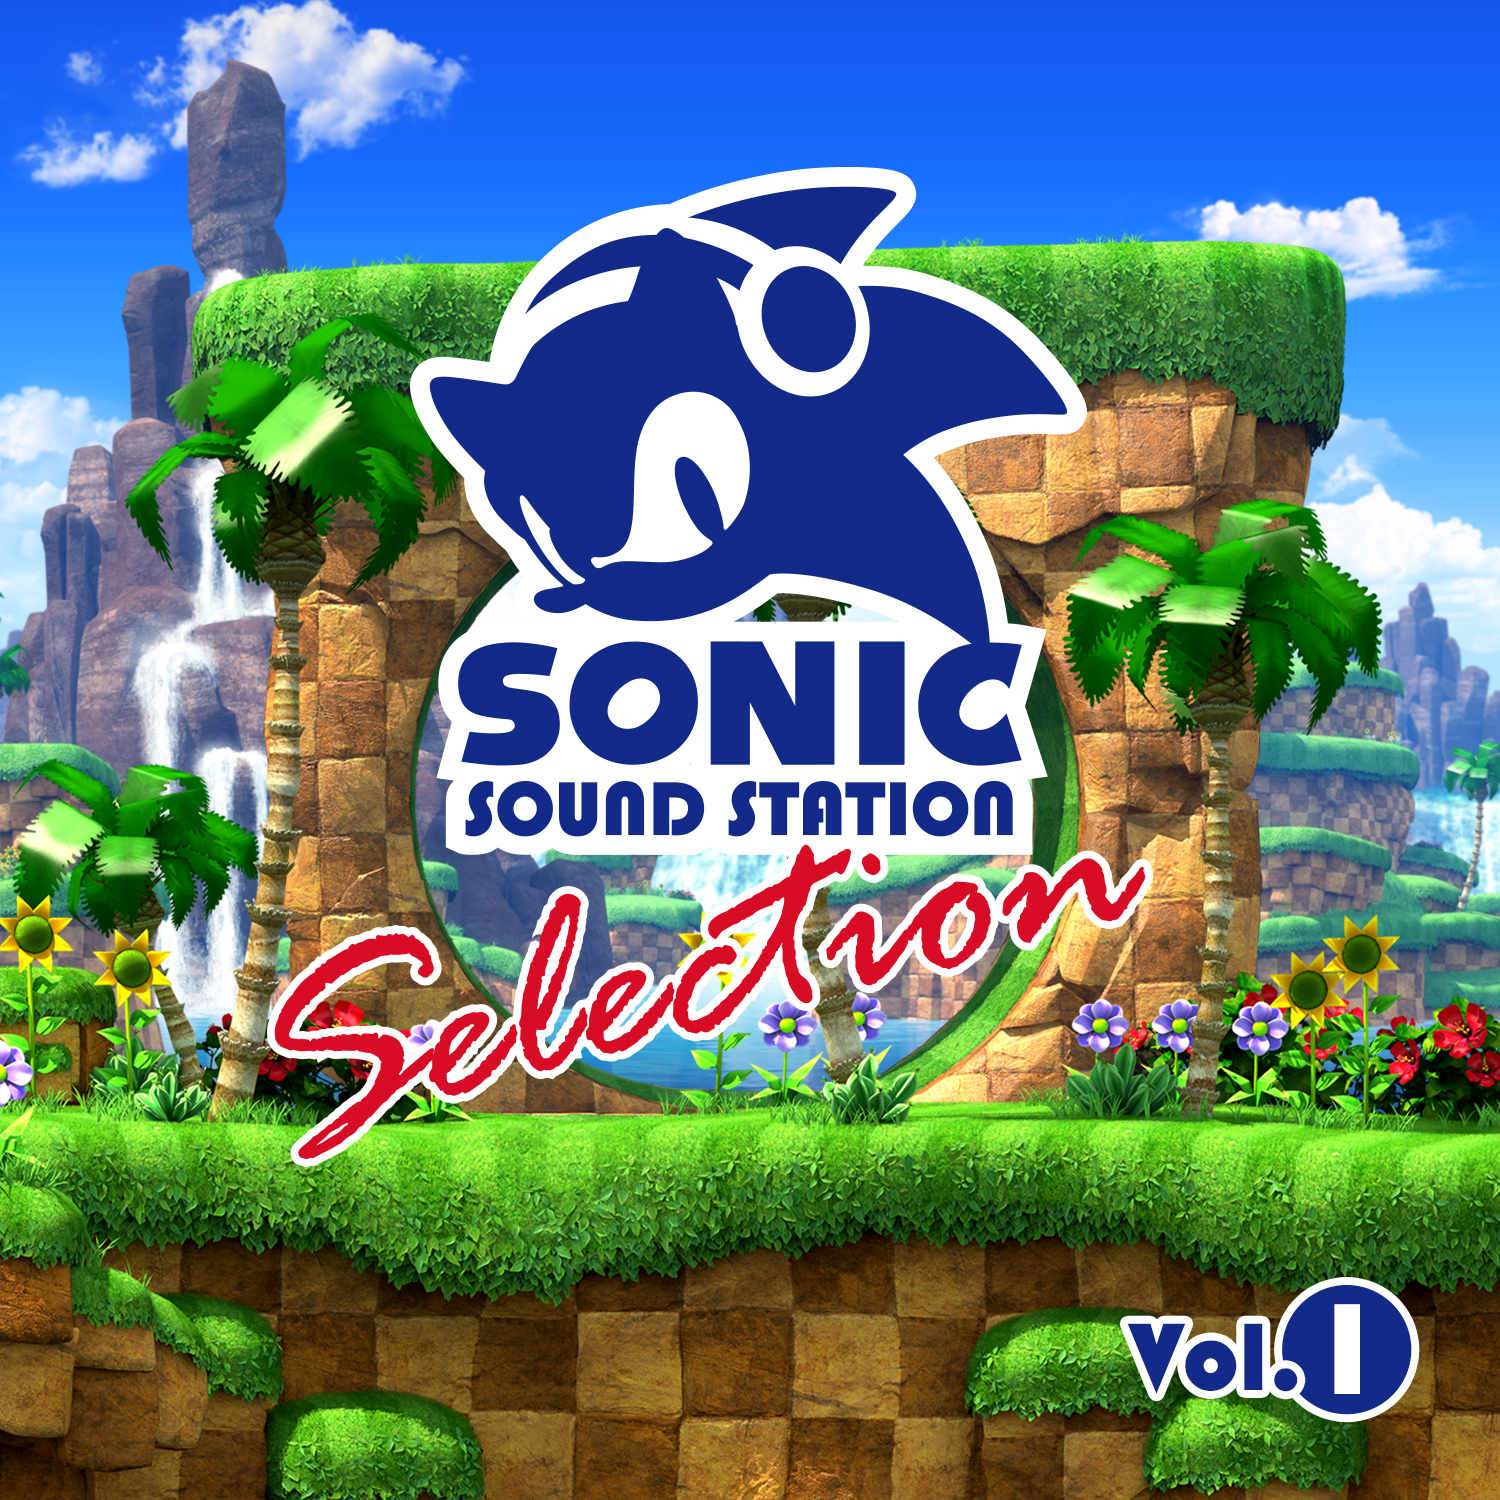 Sonic プロジェクト ソニック シリーズのミニコンピレーションアルバム Sonic Sound Station Selection Vol 1 配信開始 株式会社セガのプレスリリース